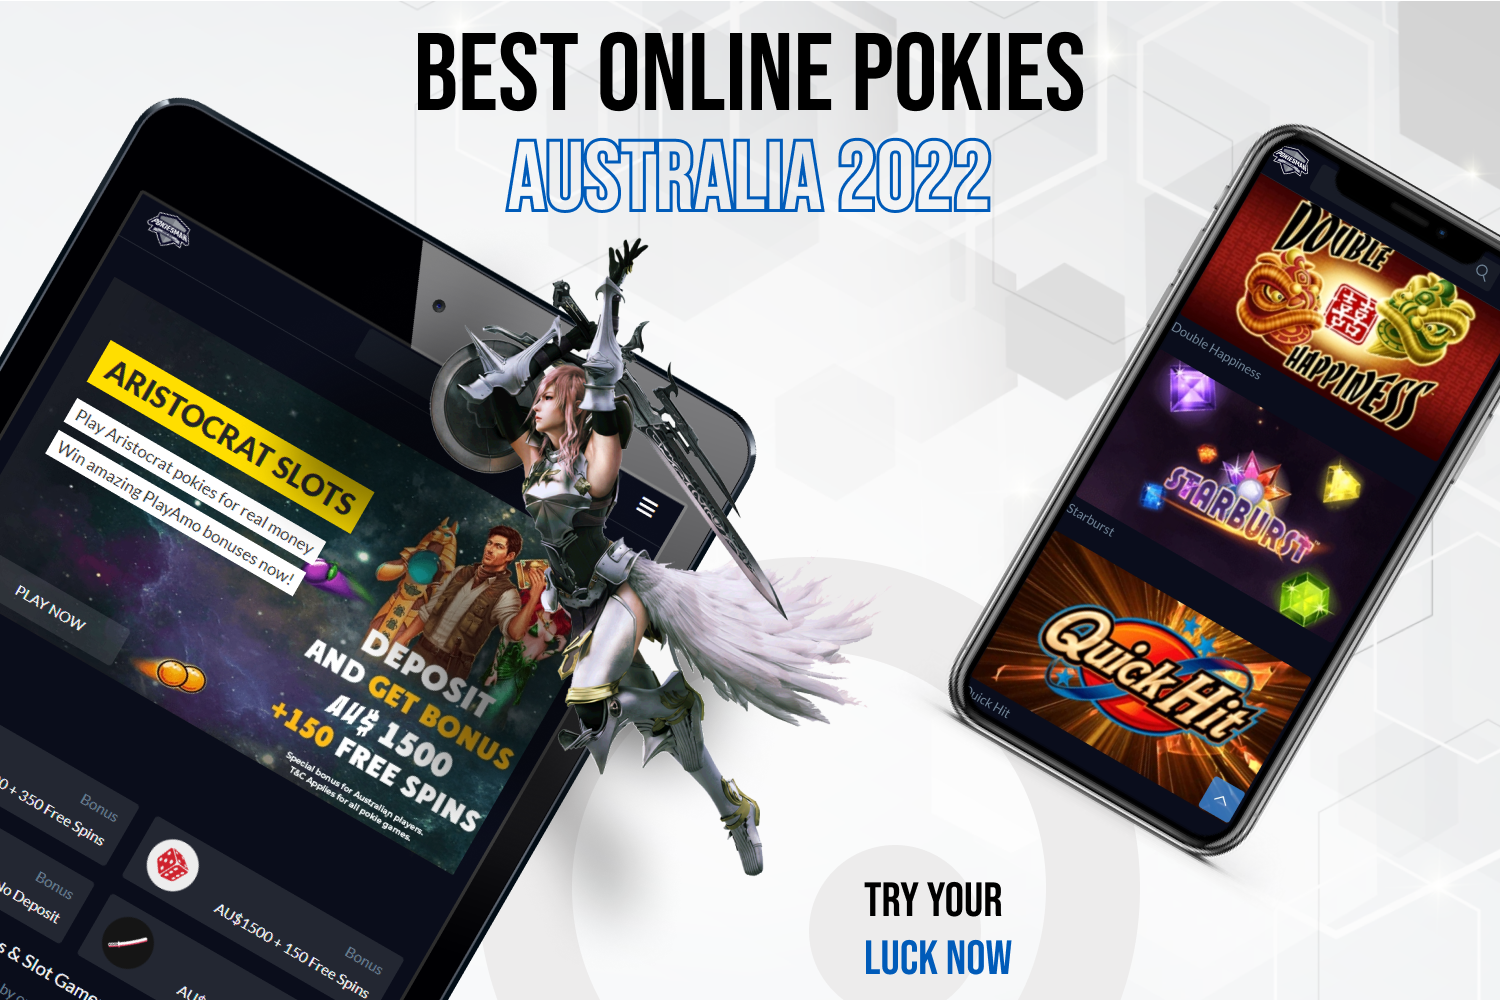 Best Online Pokies Australia Review 2022 by Pokiesman Ante Up Magazine